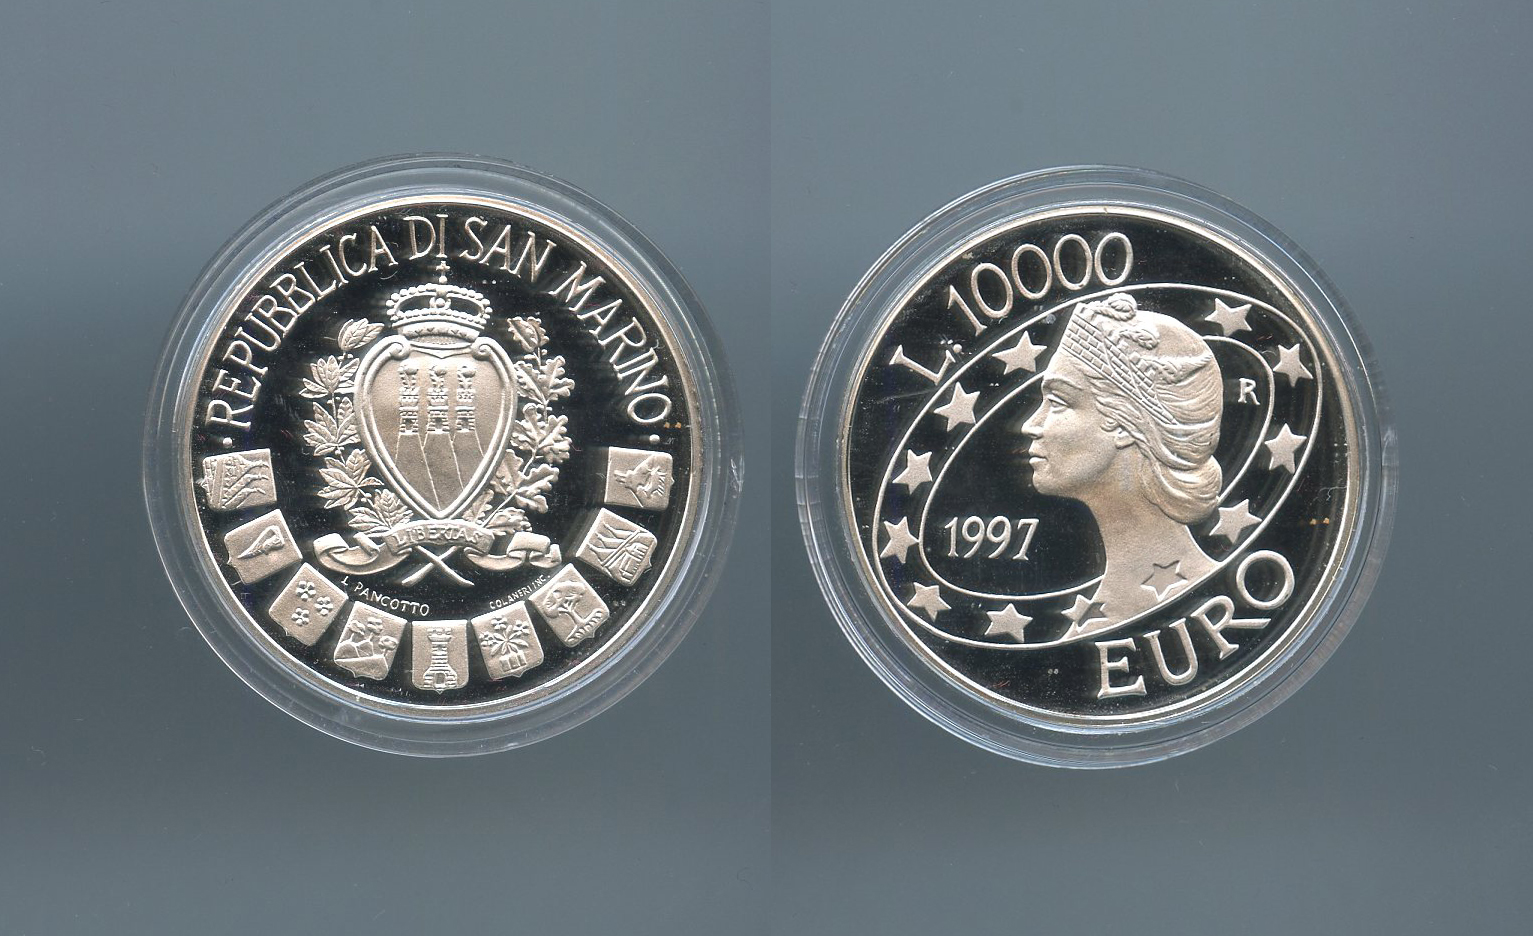 SAN MARINO, 10000 Lire 1997 "Euro"